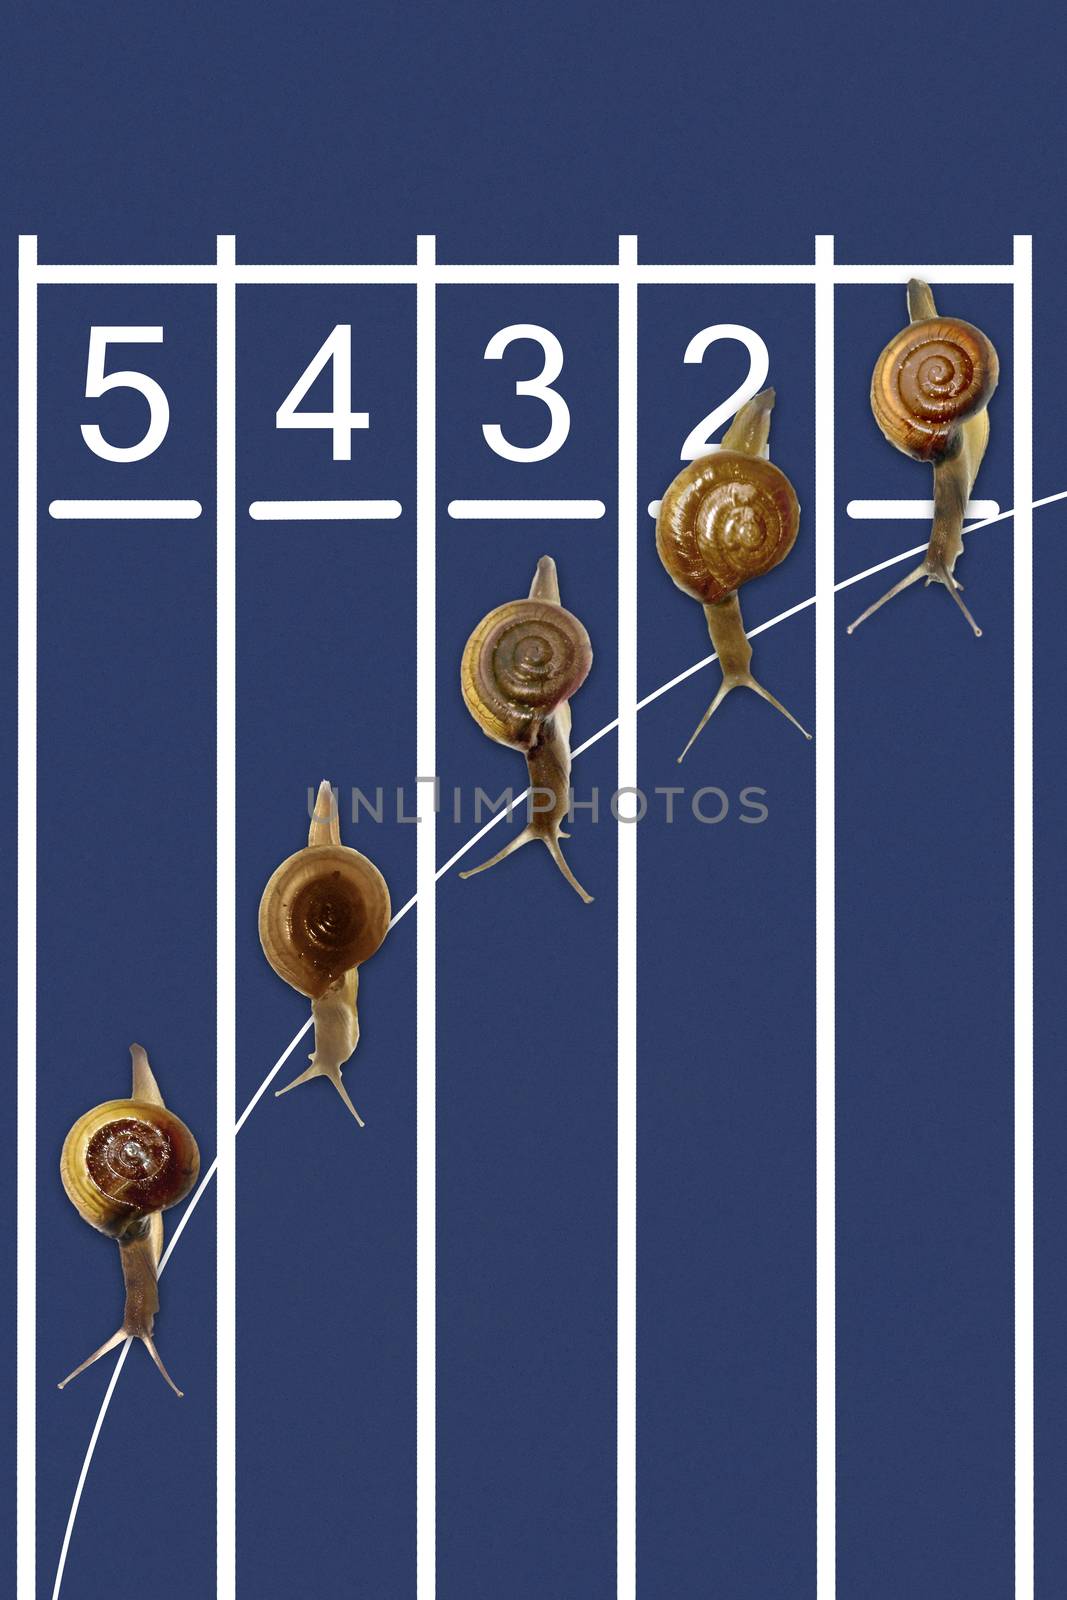 Snails running on track